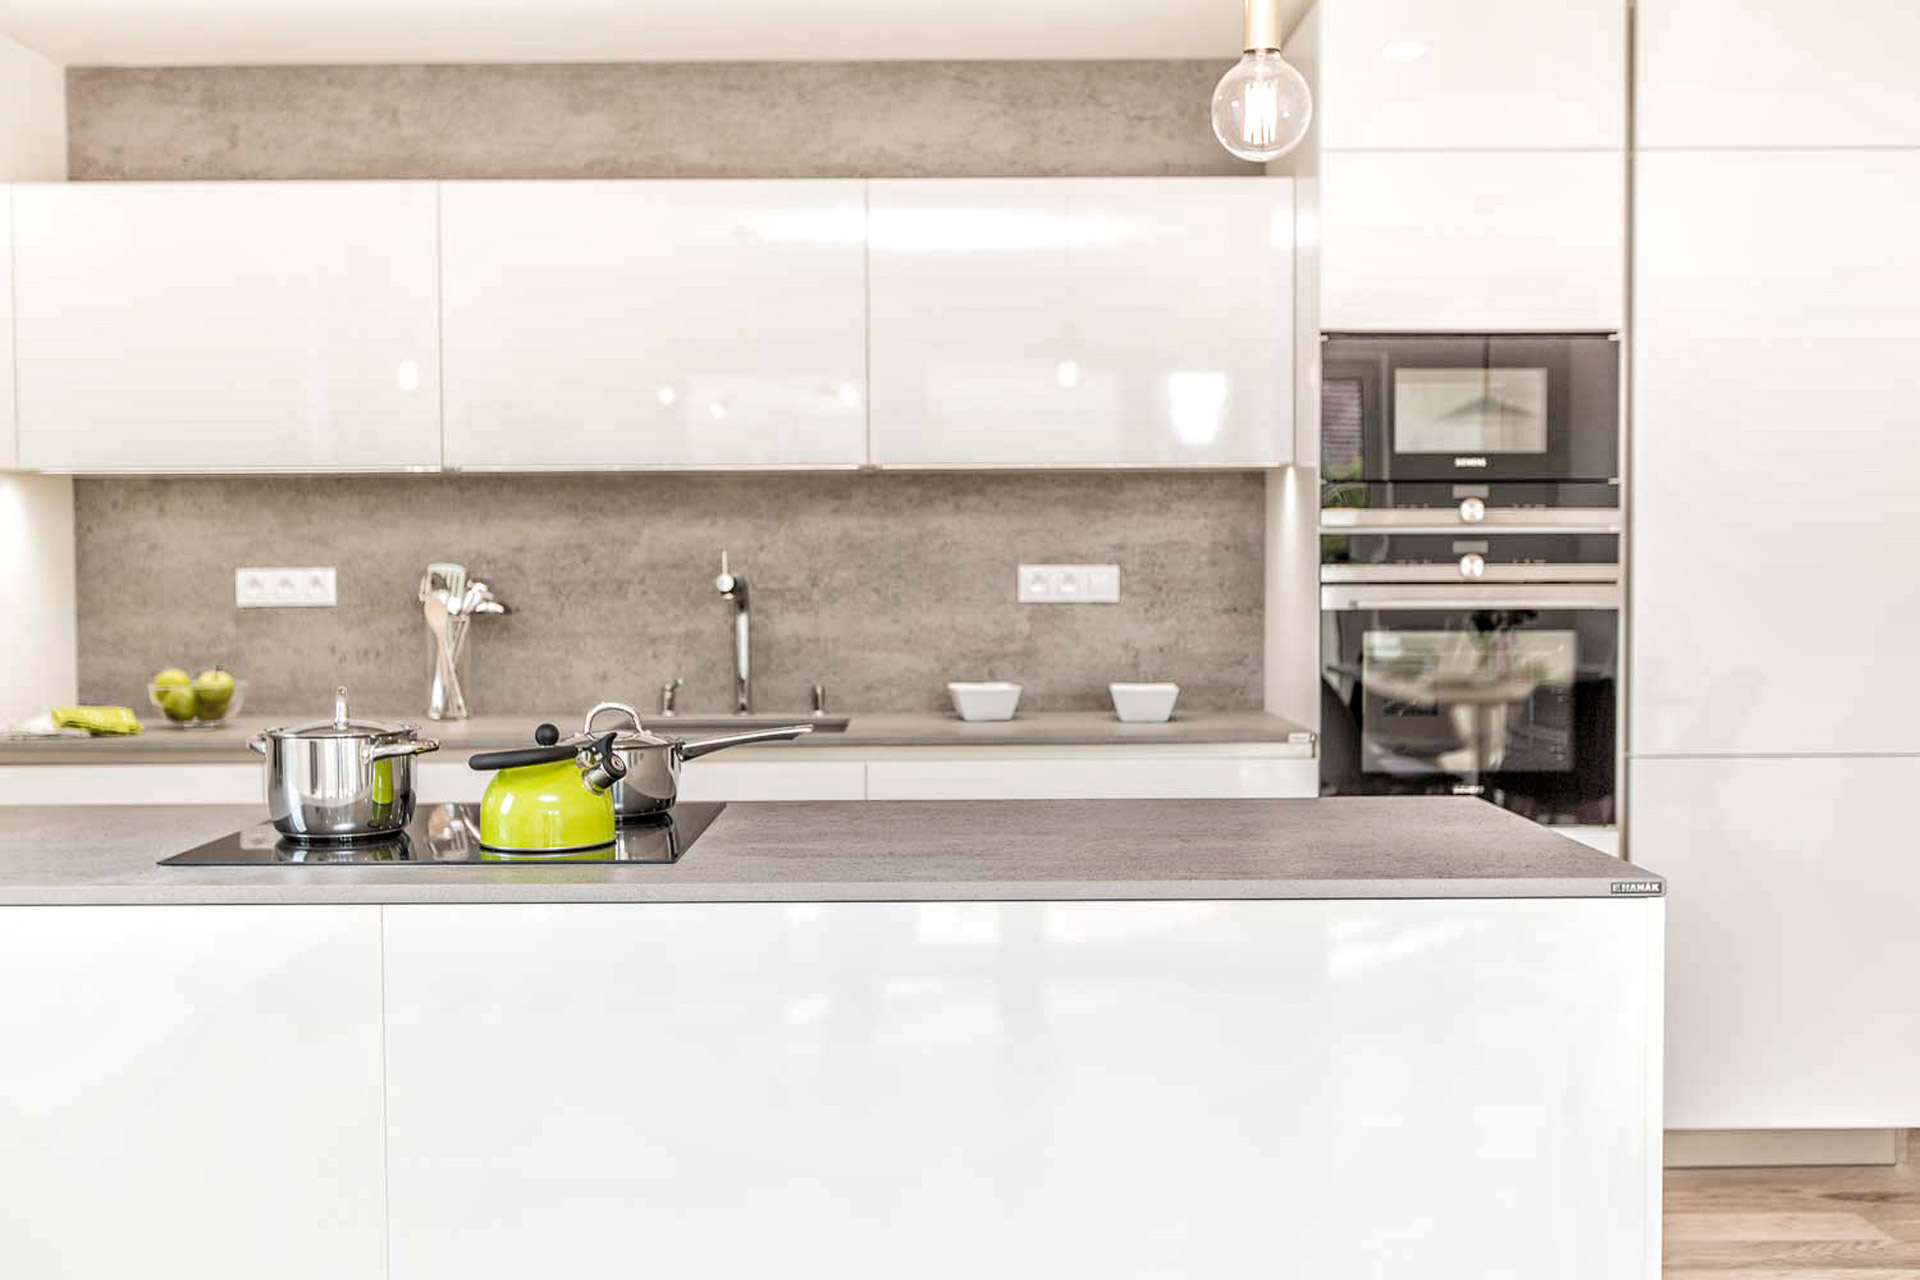 Hanák nábytek Ukázka realizace Moderní kuchyně bílý lak